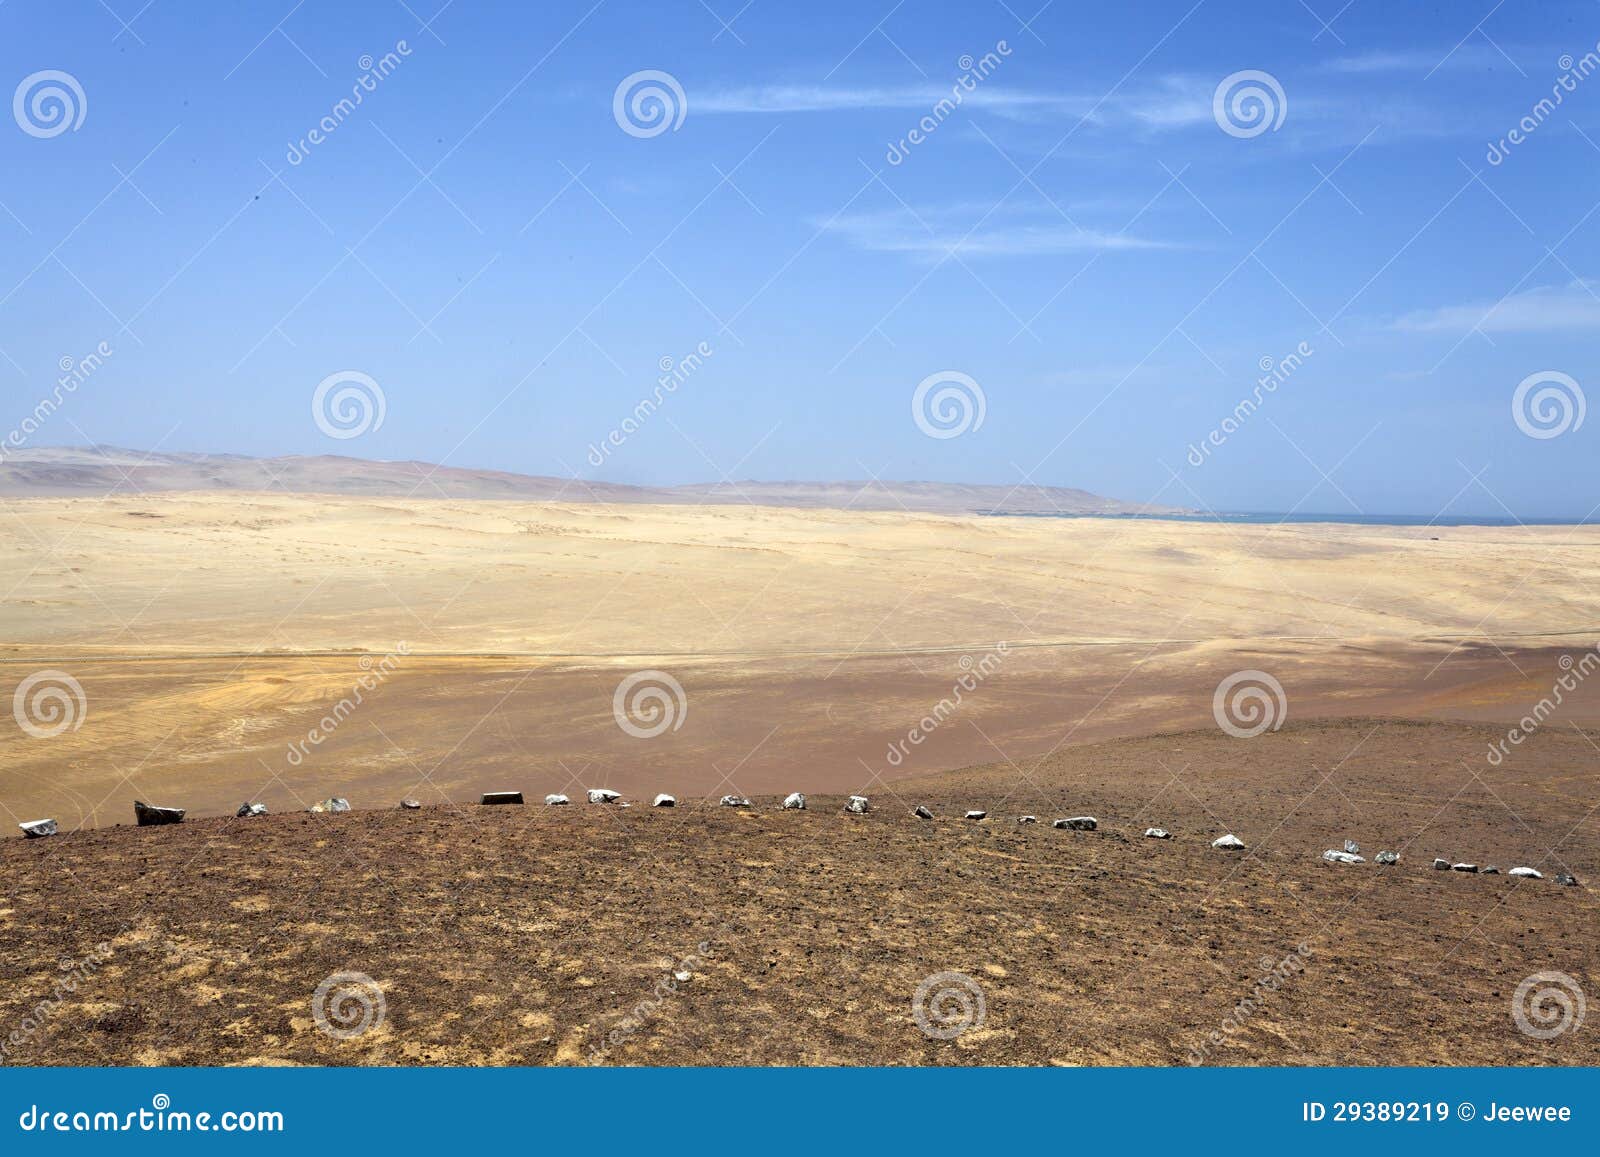 desert - reserva national de paracas national park in ica peru, south america